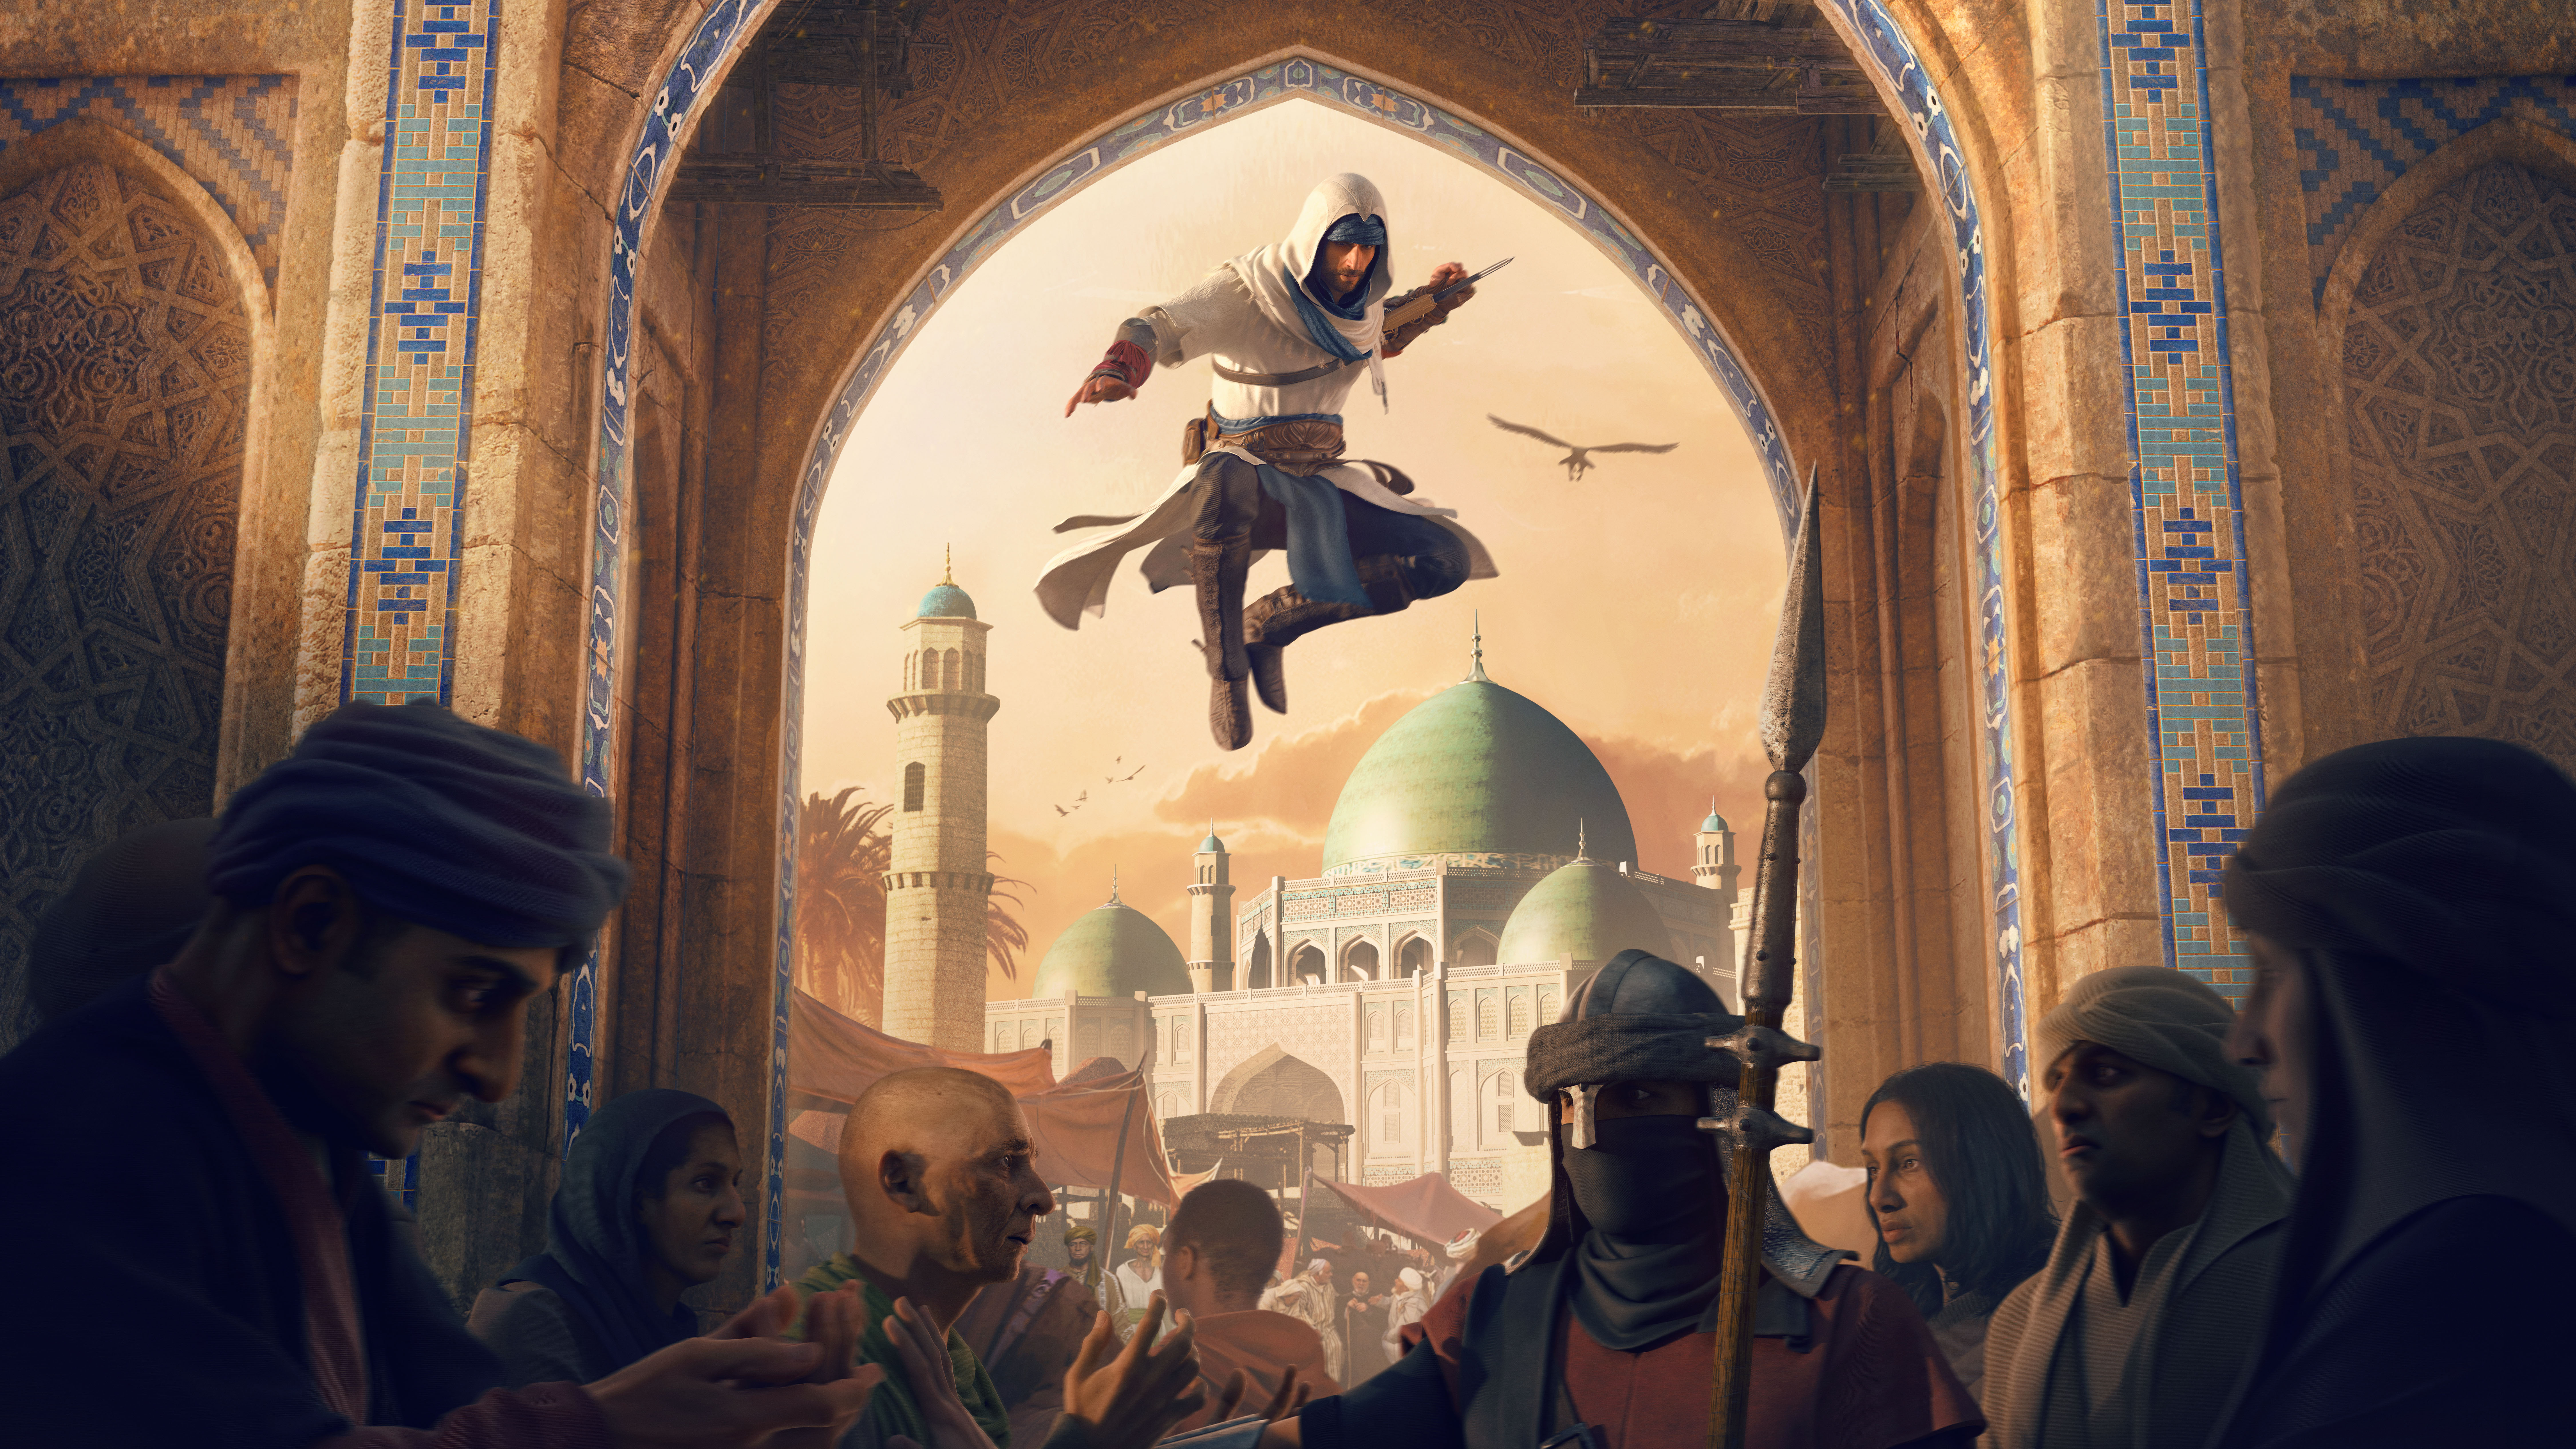 Assassin's Creed Mirage'ın kahramanı biraz OP gibi görünüyor... yaptığı tüm ışınlanmalara rağmen